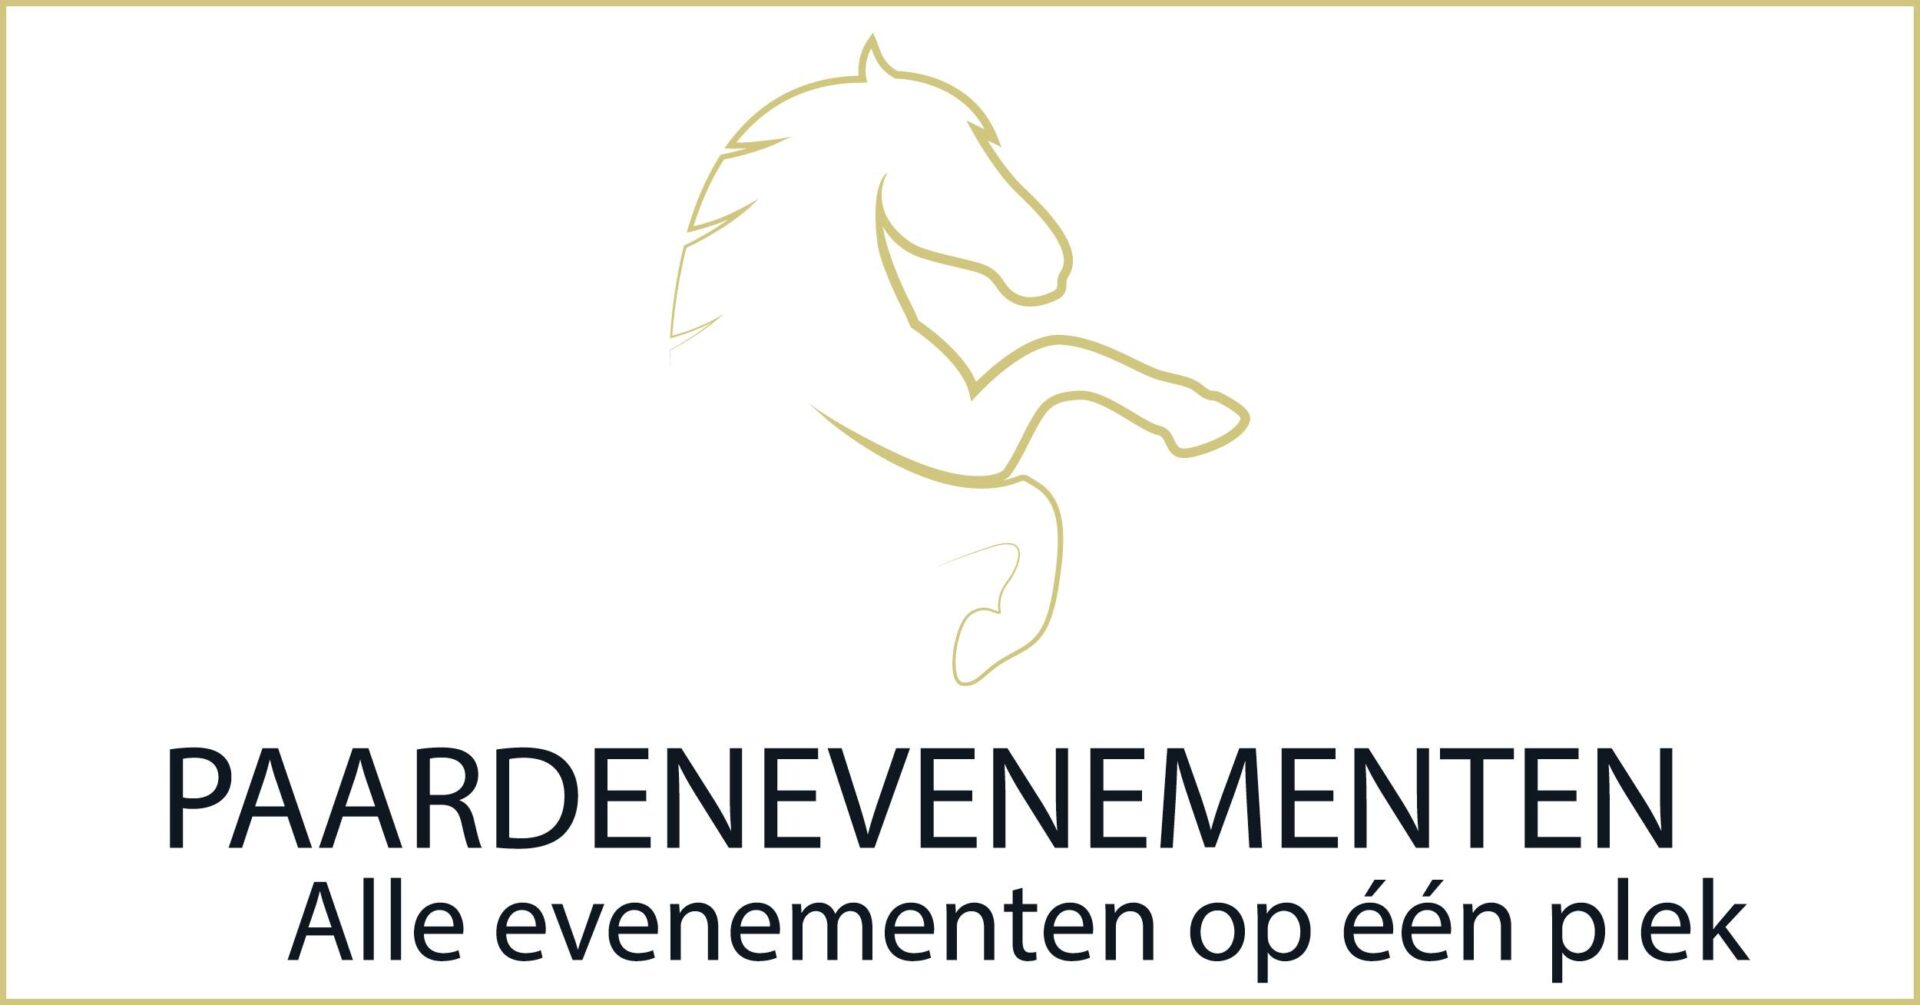 (c) Paardenevenementen.nl